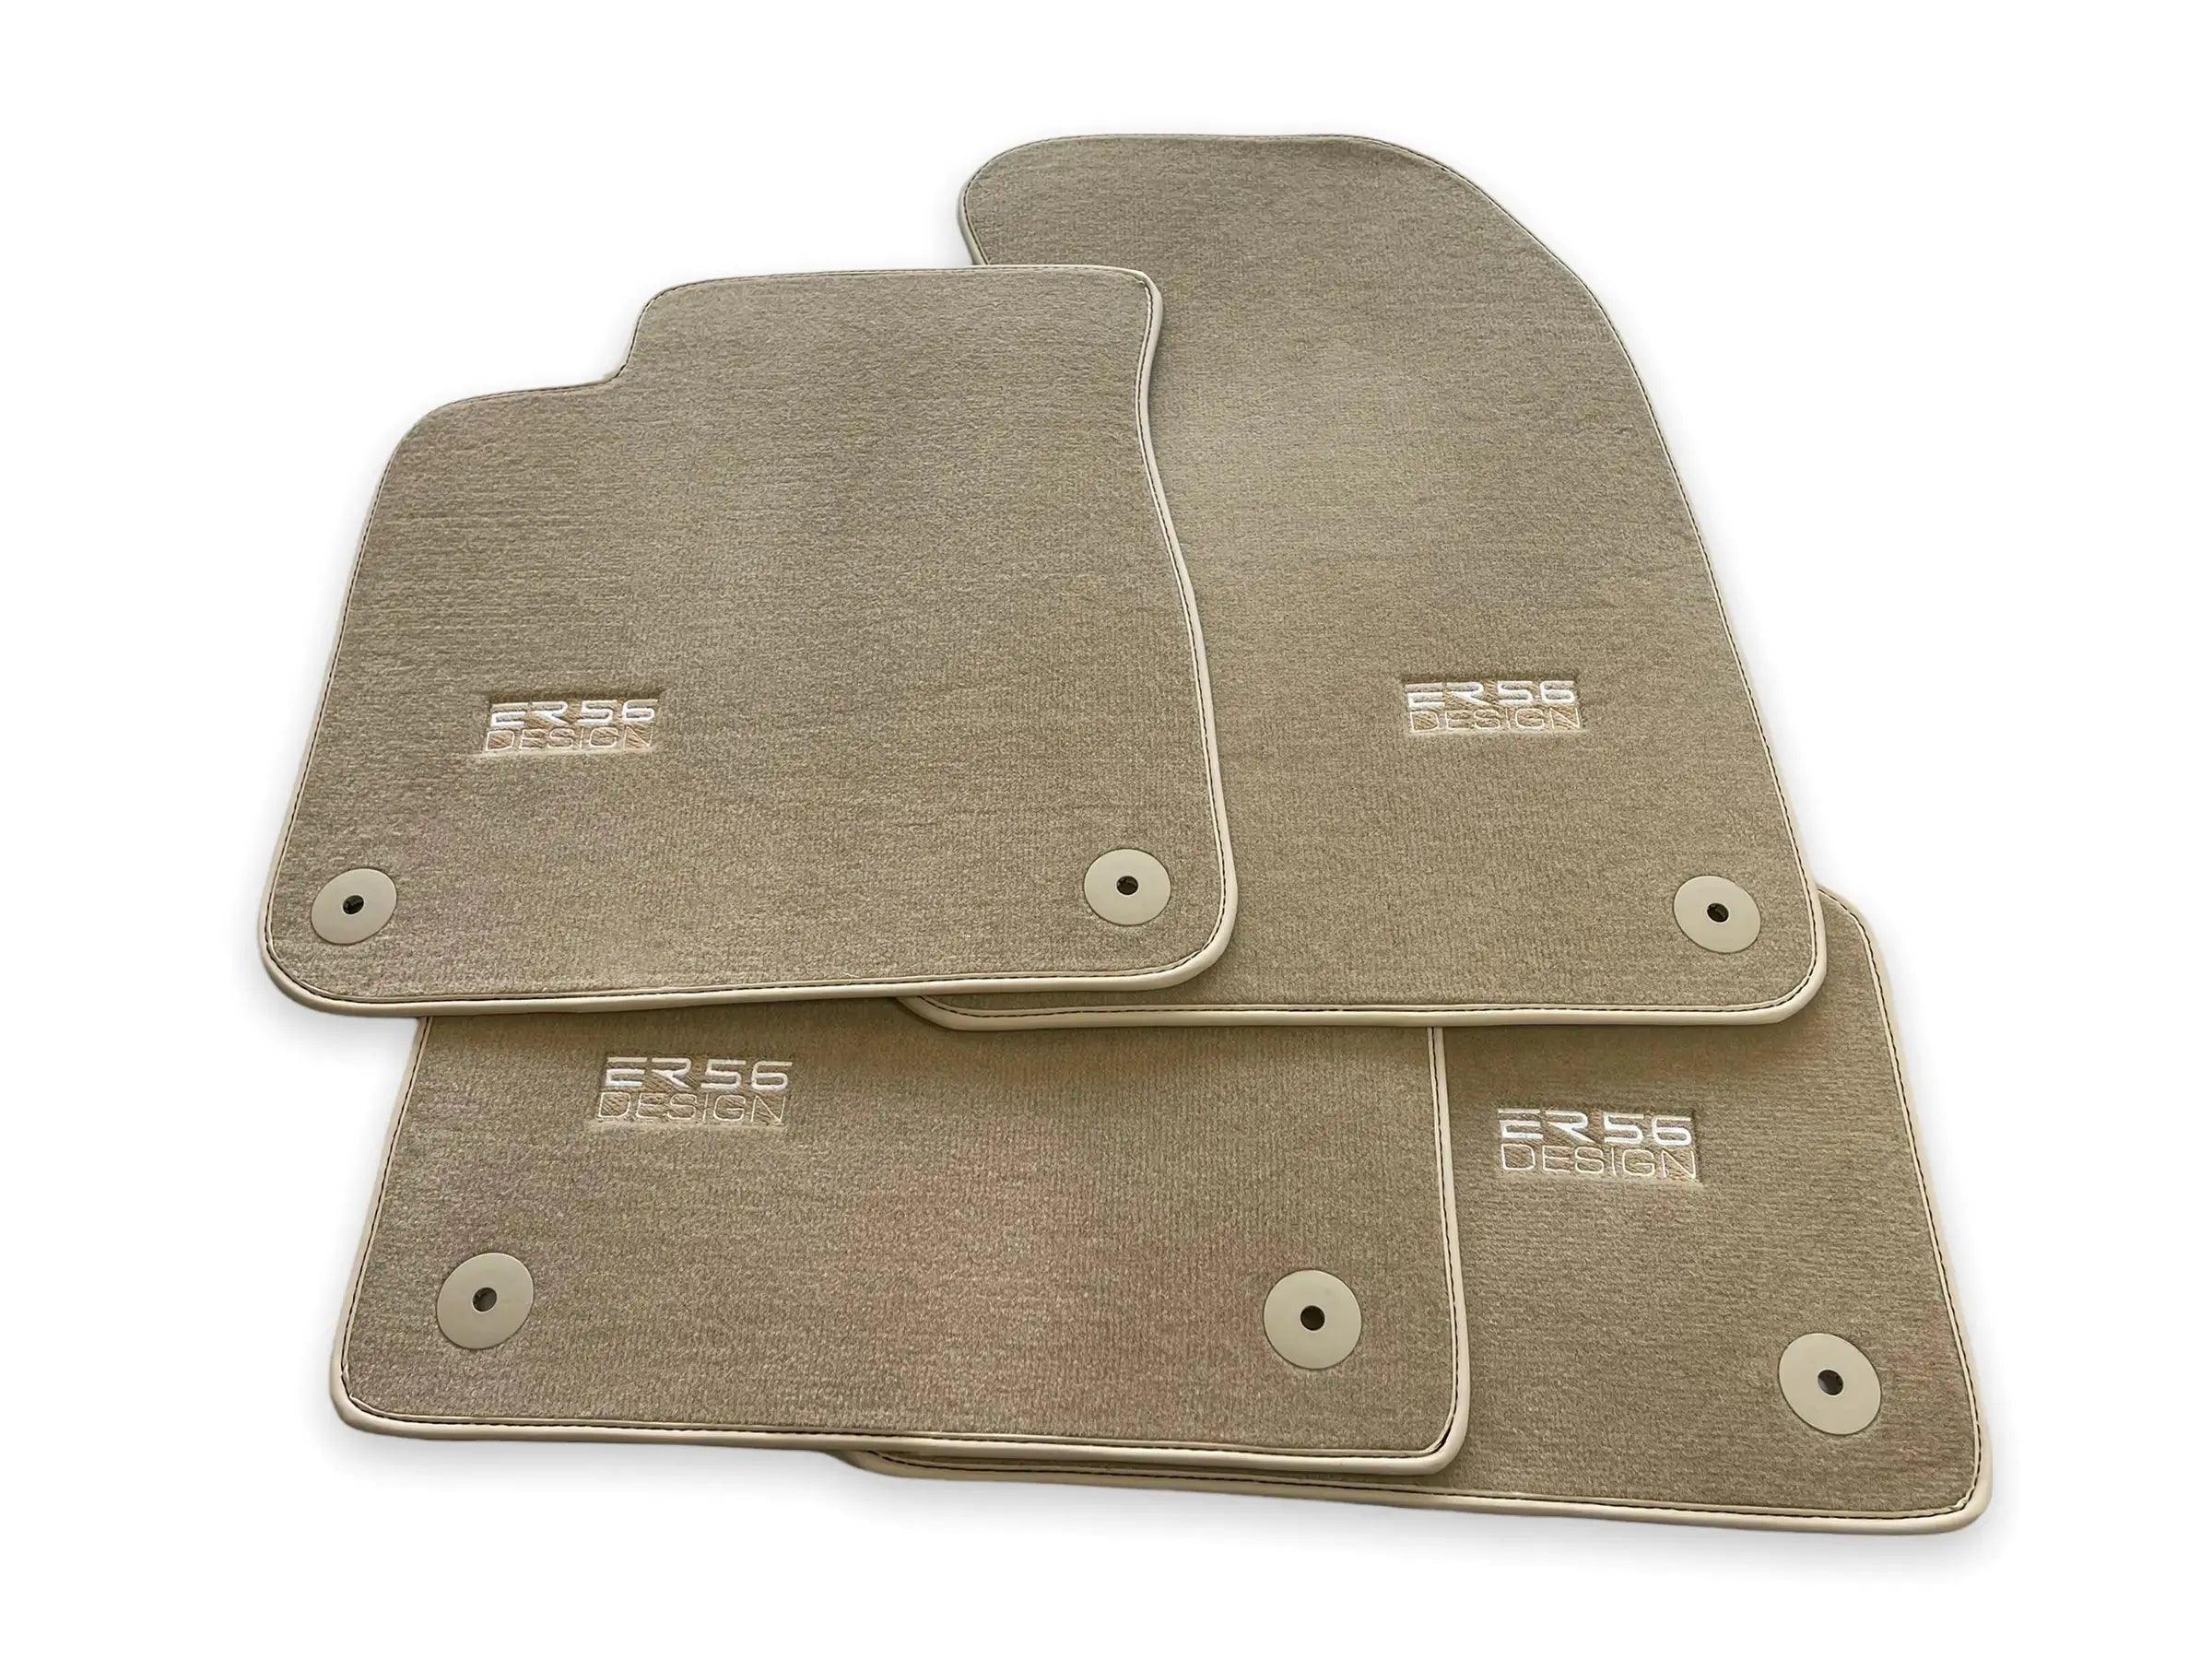 Beige Floor Mats for Audi Q8 e-tron (2023-2025) | ER56 Design - AutoWin